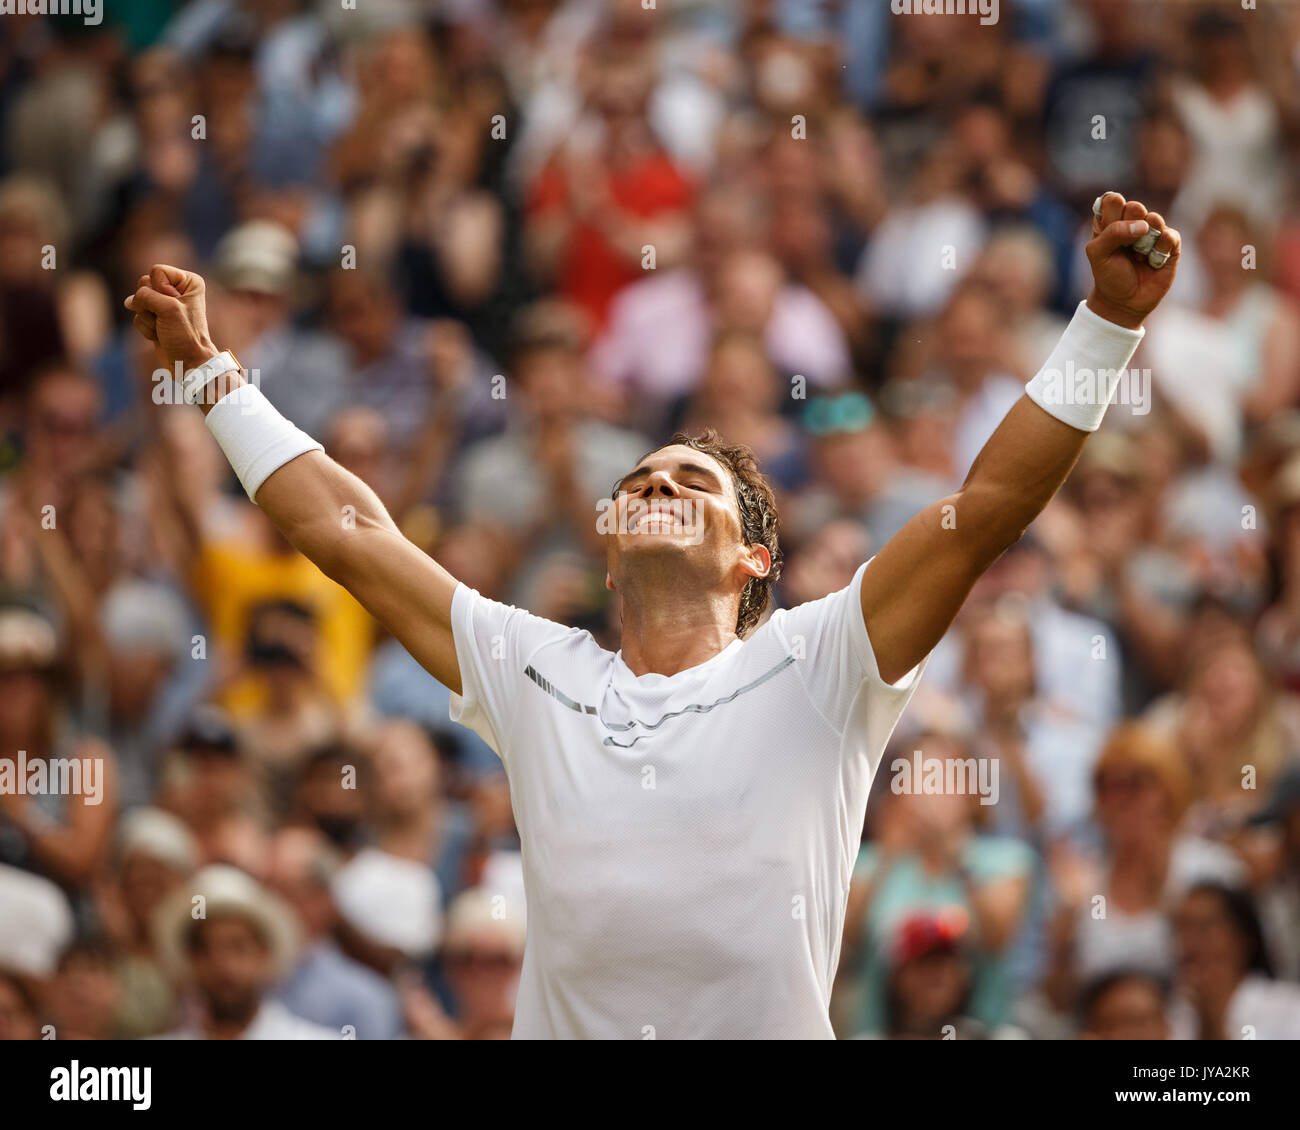 Rafael Nadal s'étire les bras et des acclamations après sa victoire à Wimbledon Tennis Championships 2017, Londres, Angleterre, Royaume-Uni. Banque D'Images